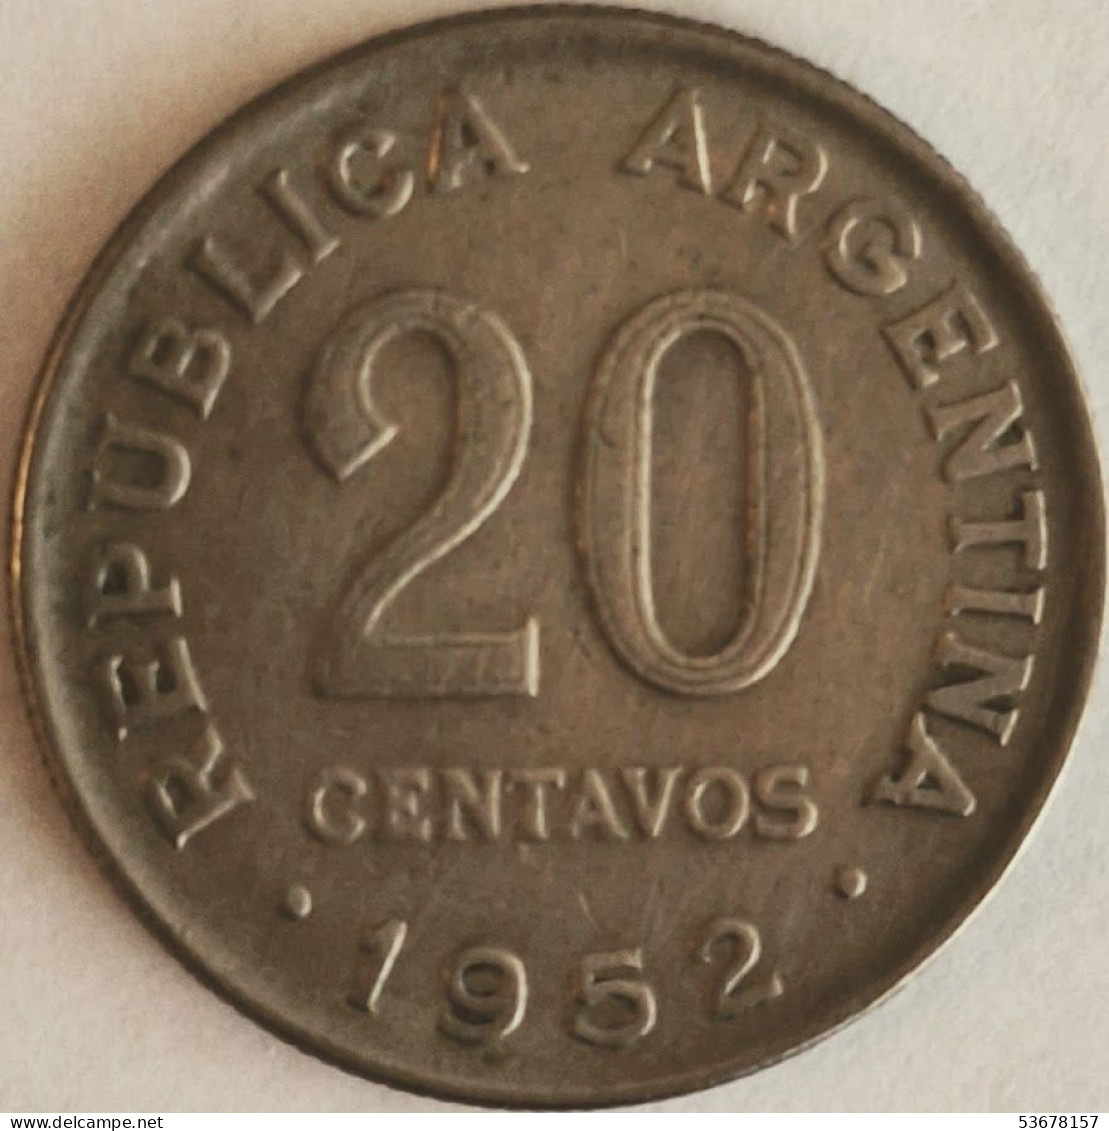 Argentina - 20 Centavos 1952, KM# 48 (non-magnetic) (#2741) - Argentine